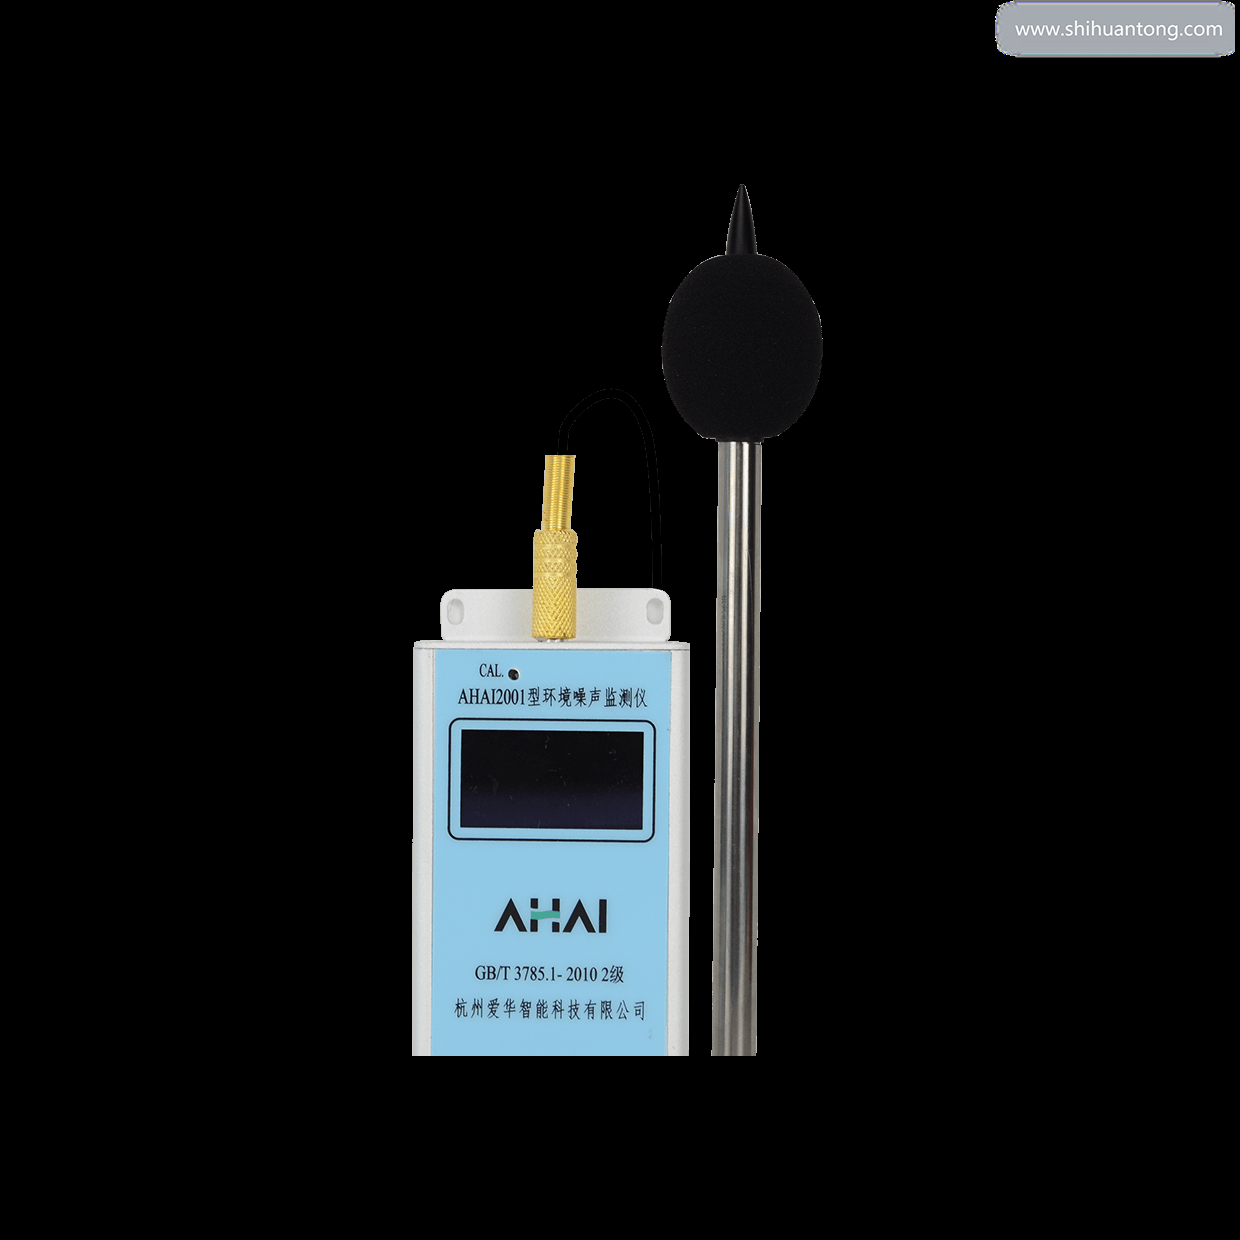 杭州爱华智能AHAI2001-2扬尘配套版环境噪声监测仪